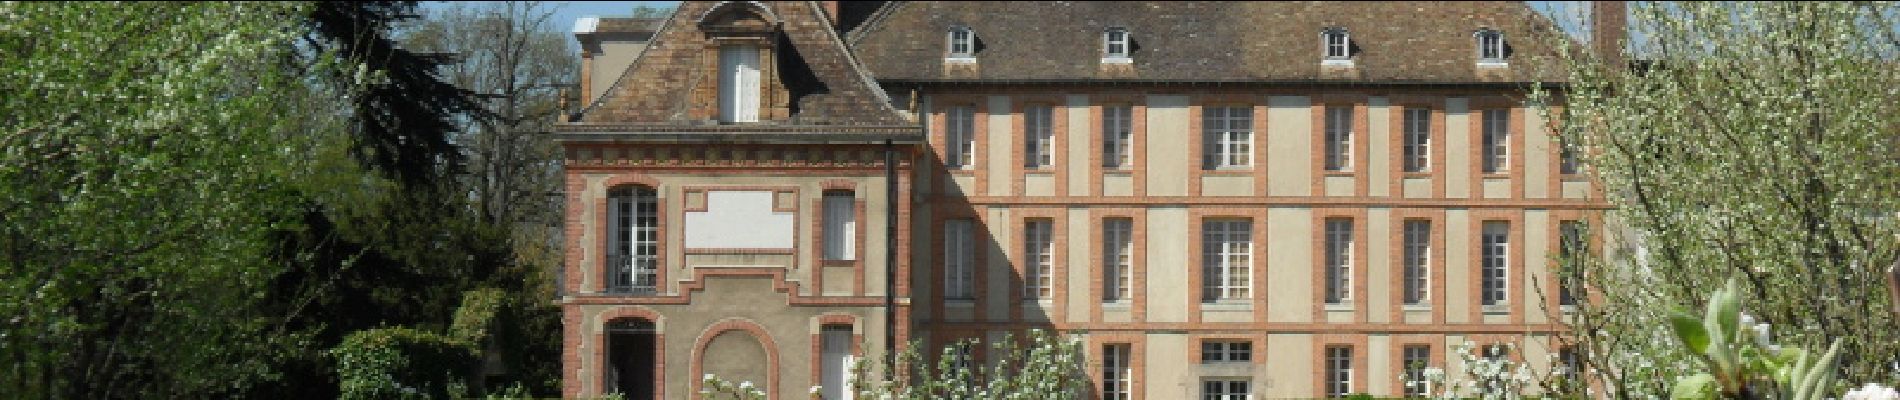 POI Magny-les-Hameaux - Musée national des Granges de Port-Royal - Photo